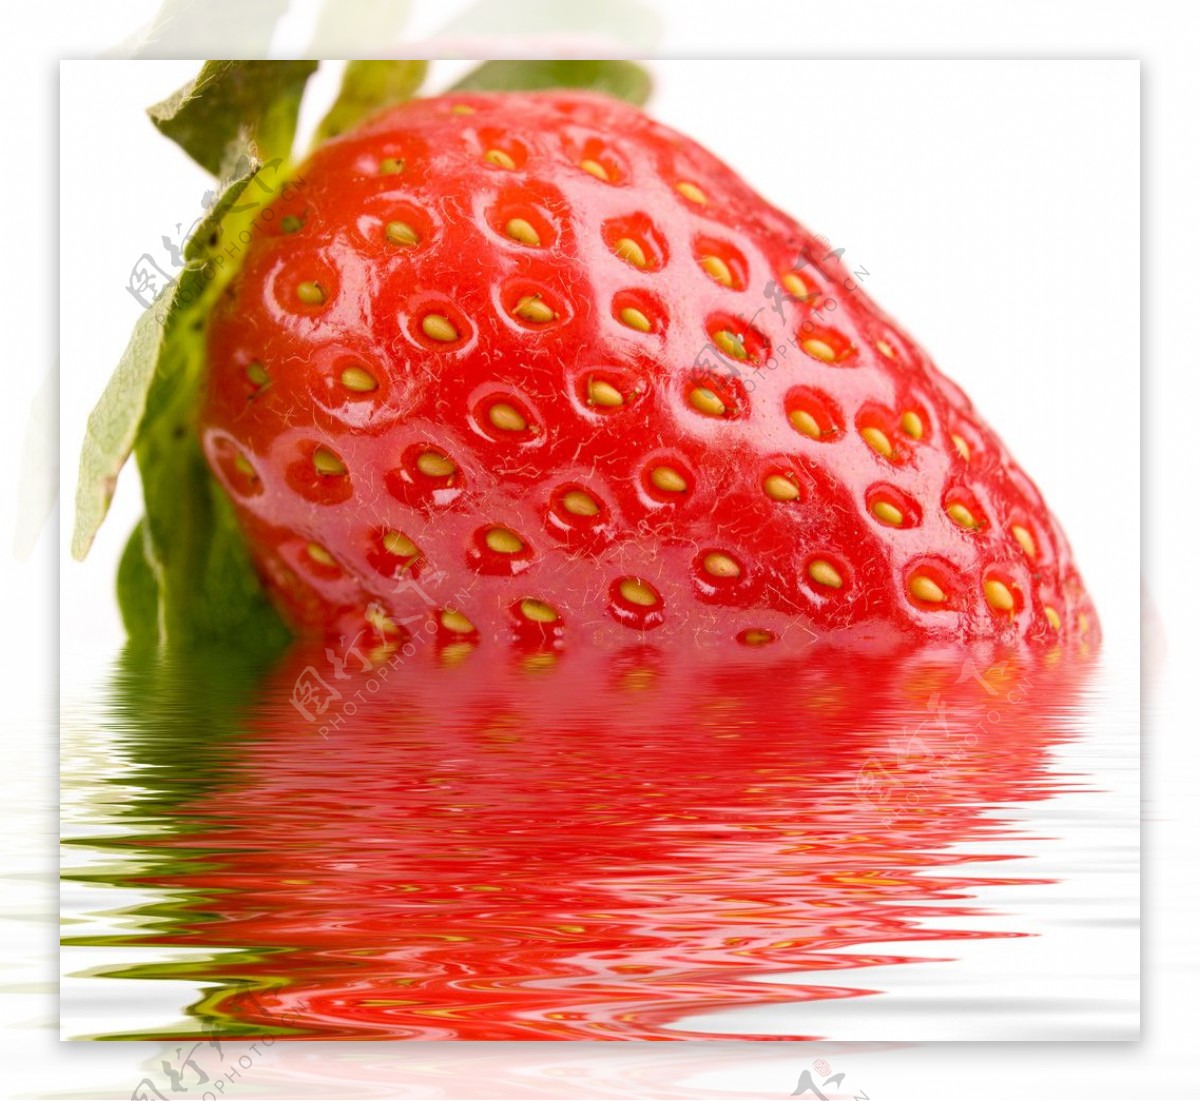 水中的草莓图片